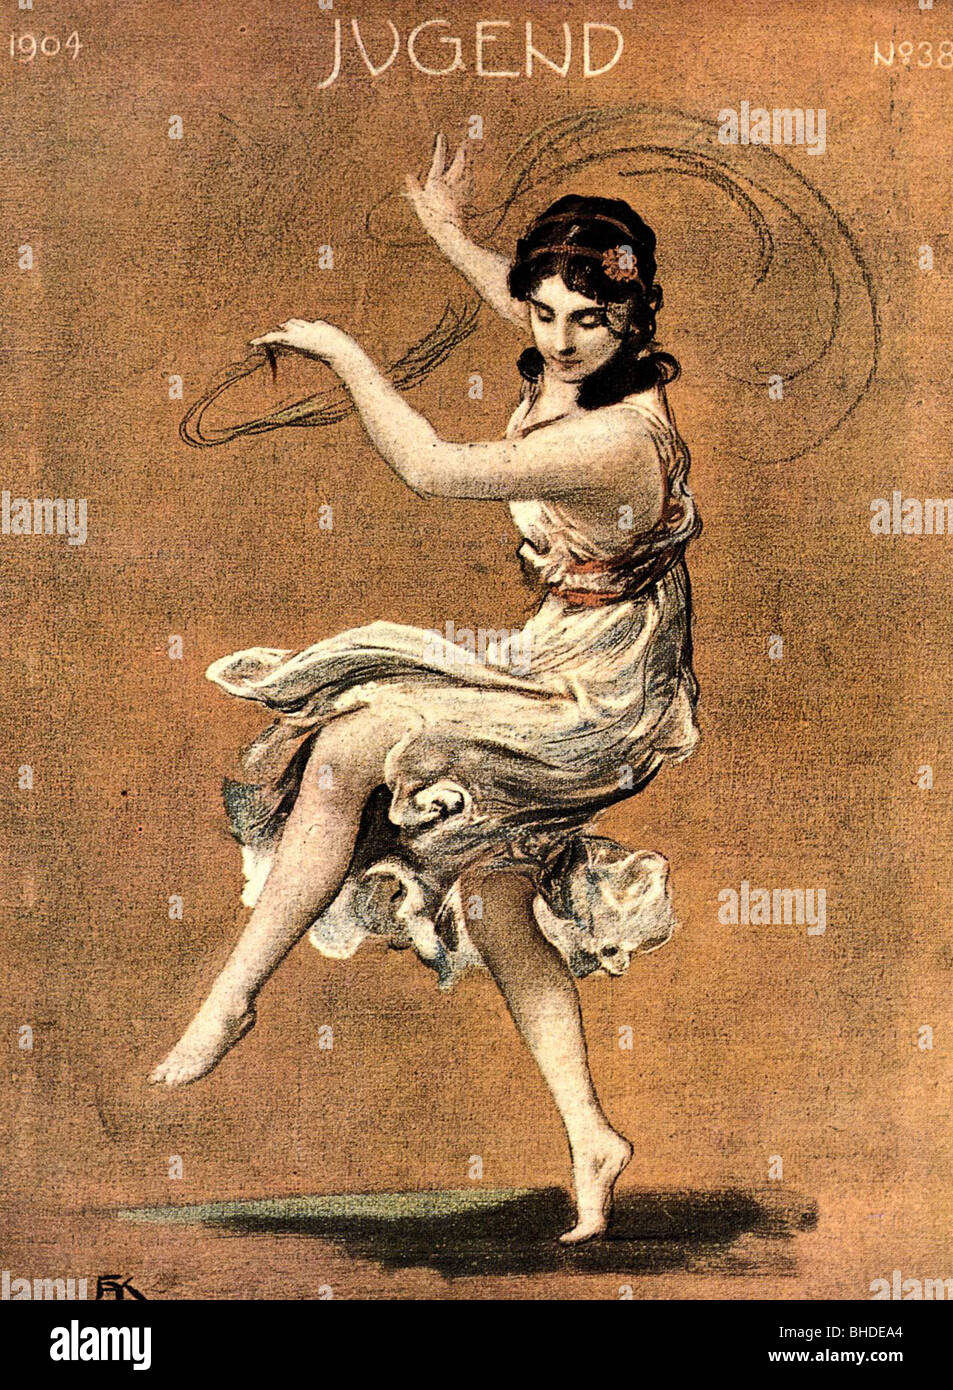 Duncan, Isadora 26.5.1877 - 14.9.1927, danseuse américaine, pleine longueur, danse, page de titre du magazine 'Jugend', No 38, 1904, pastel, par Fritz August von Kaulbach (1850 - 1920), Banque D'Images